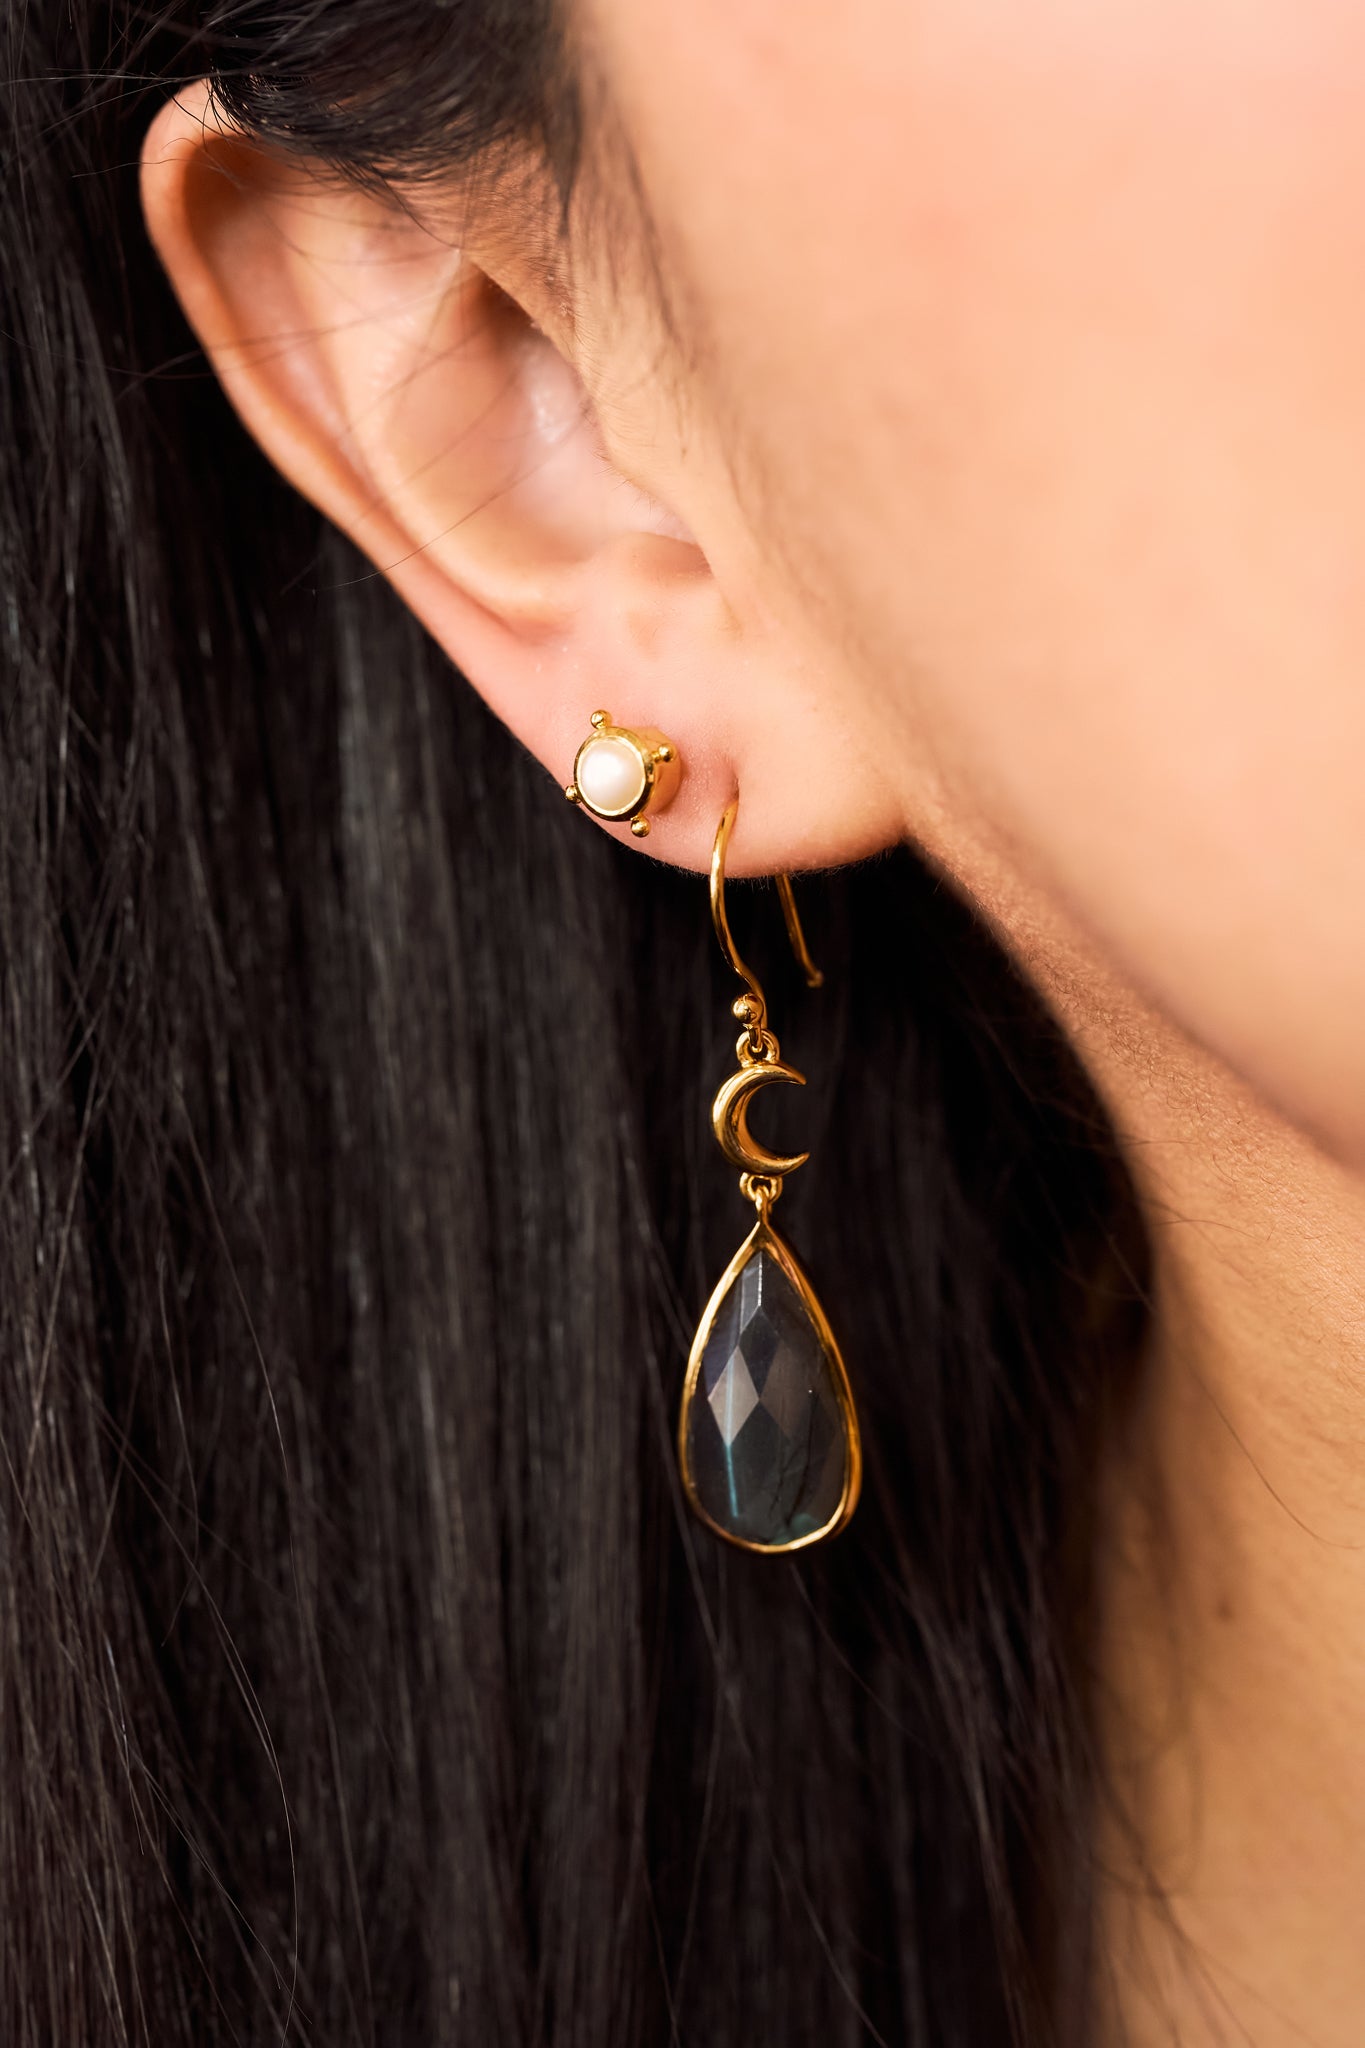 Celestial Goddess Gemstone Earrings Gold Vermeil